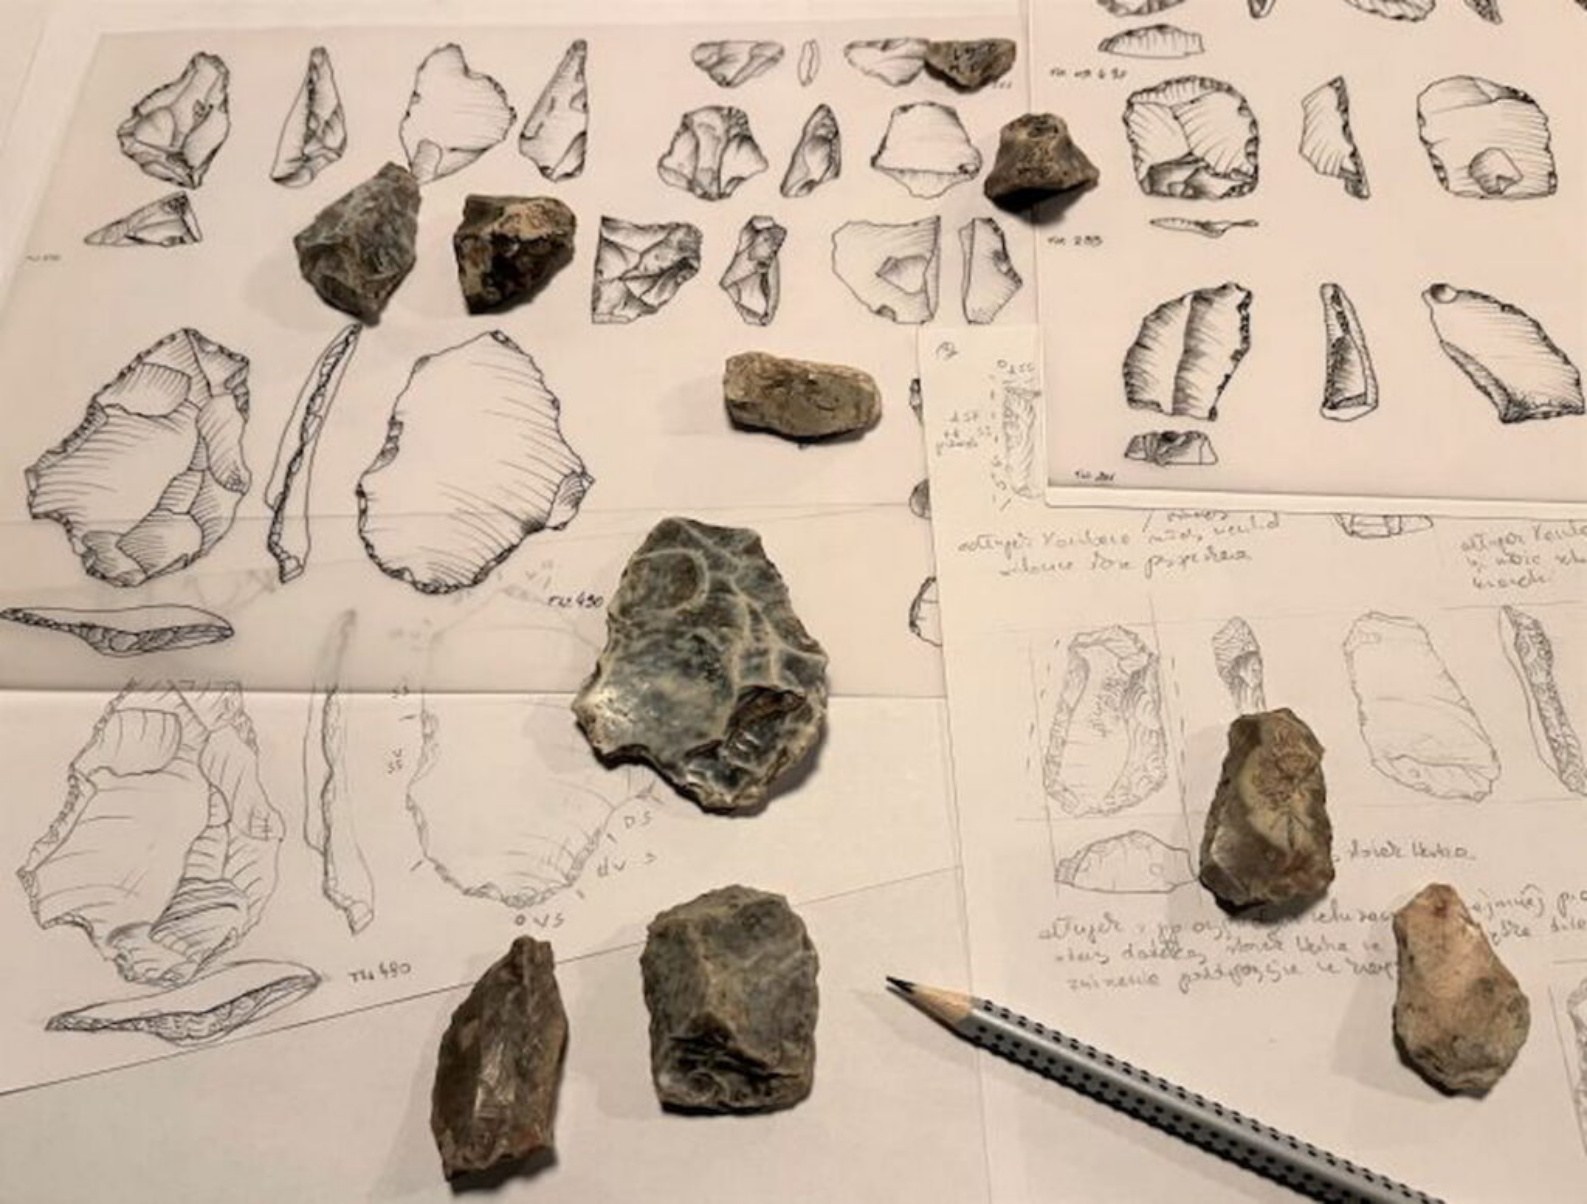 來自 Tunel Wielki 洞穴的燧石手工藝品，可能由 Homo heildelbergensis 在 XNUMX 萬年前製造。